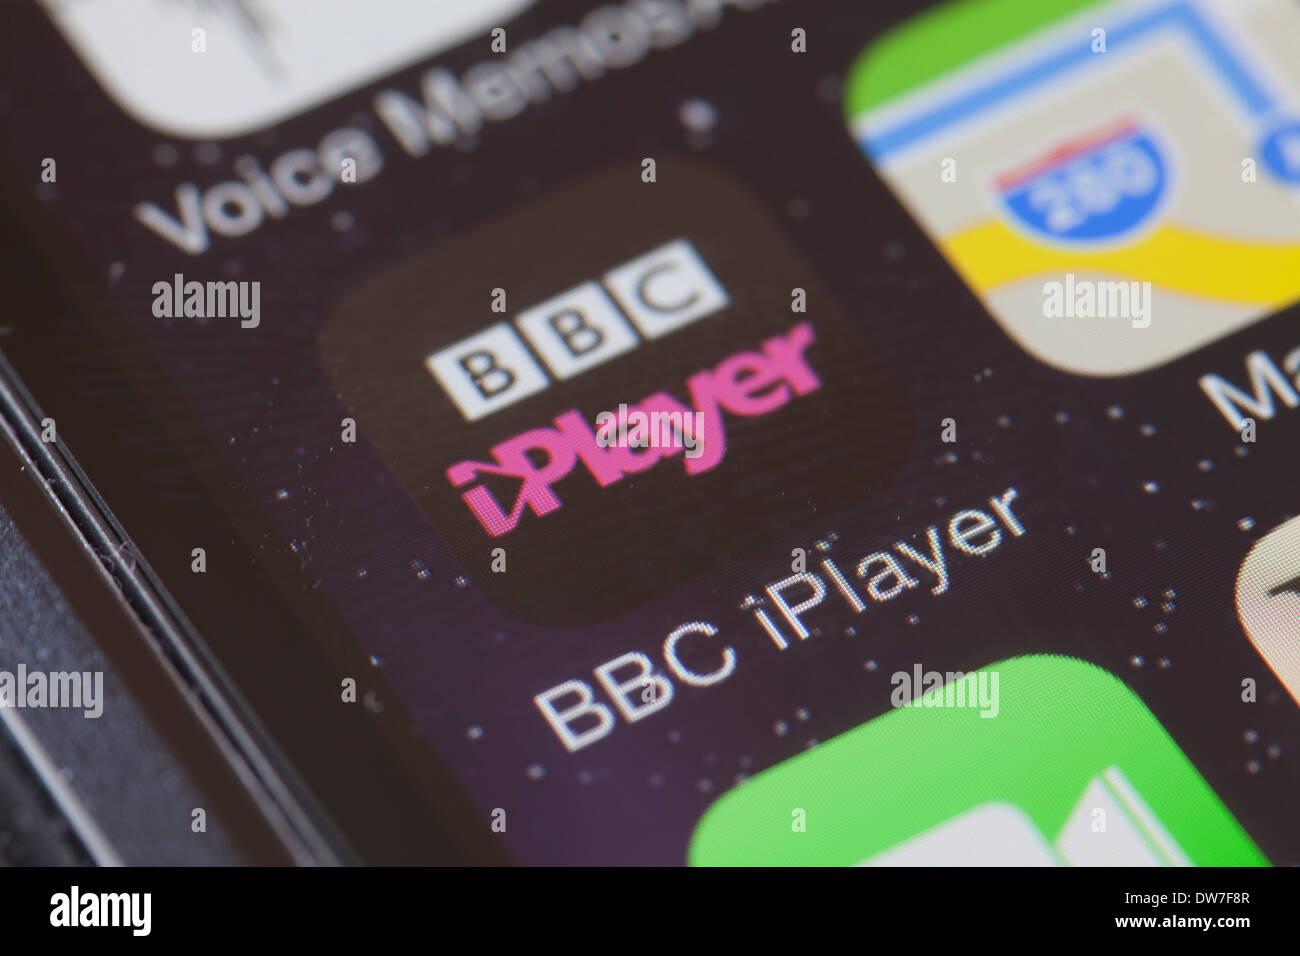 BBC iPlayer app icon on mobile phone. Stock Photo